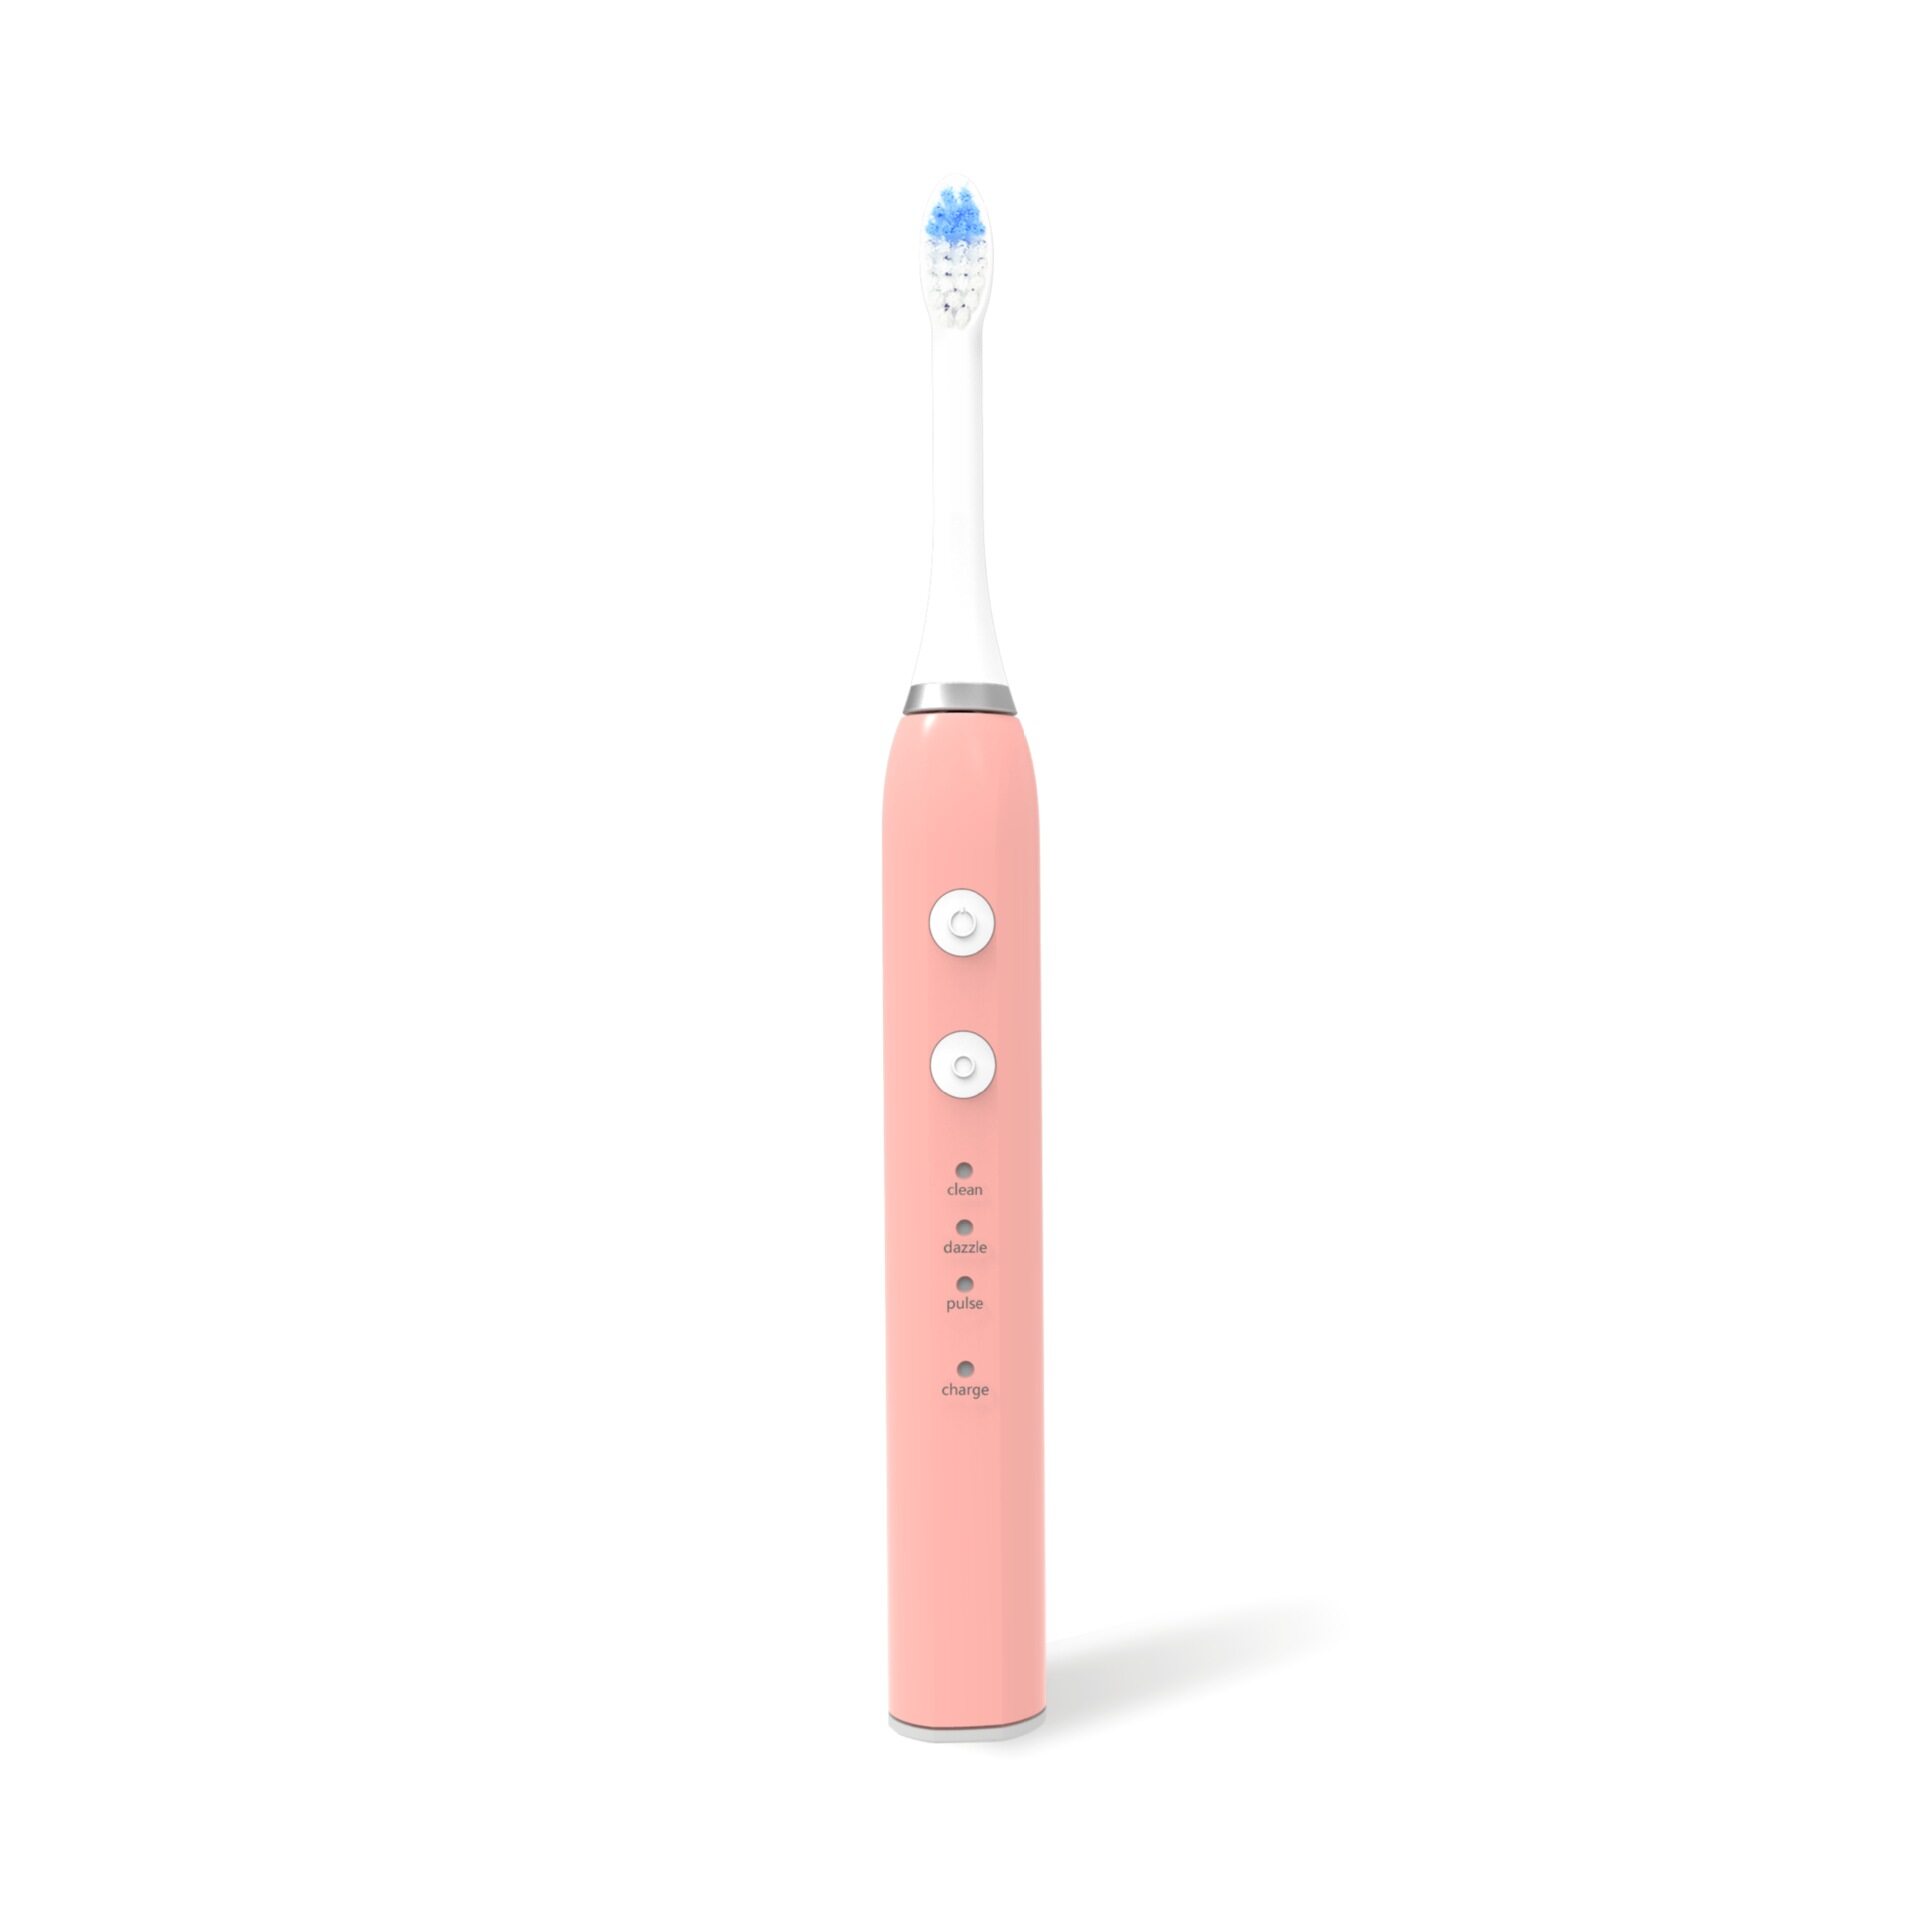 แปรงสีฟันไฟฟ้าเพื่อรอยยิ้มขาวสดใส นราธิวาส แปรงสีฟันไฟฟ้า แบบชาร์จ Electronic Toothbrush สำหรับผู้ใหญ่ ด้ามเดี่ยวแถมหัวแปรง แปรงสีฟันไฟฟ้าโซนิคโซนิคกันน้ำระดับเจ็ด